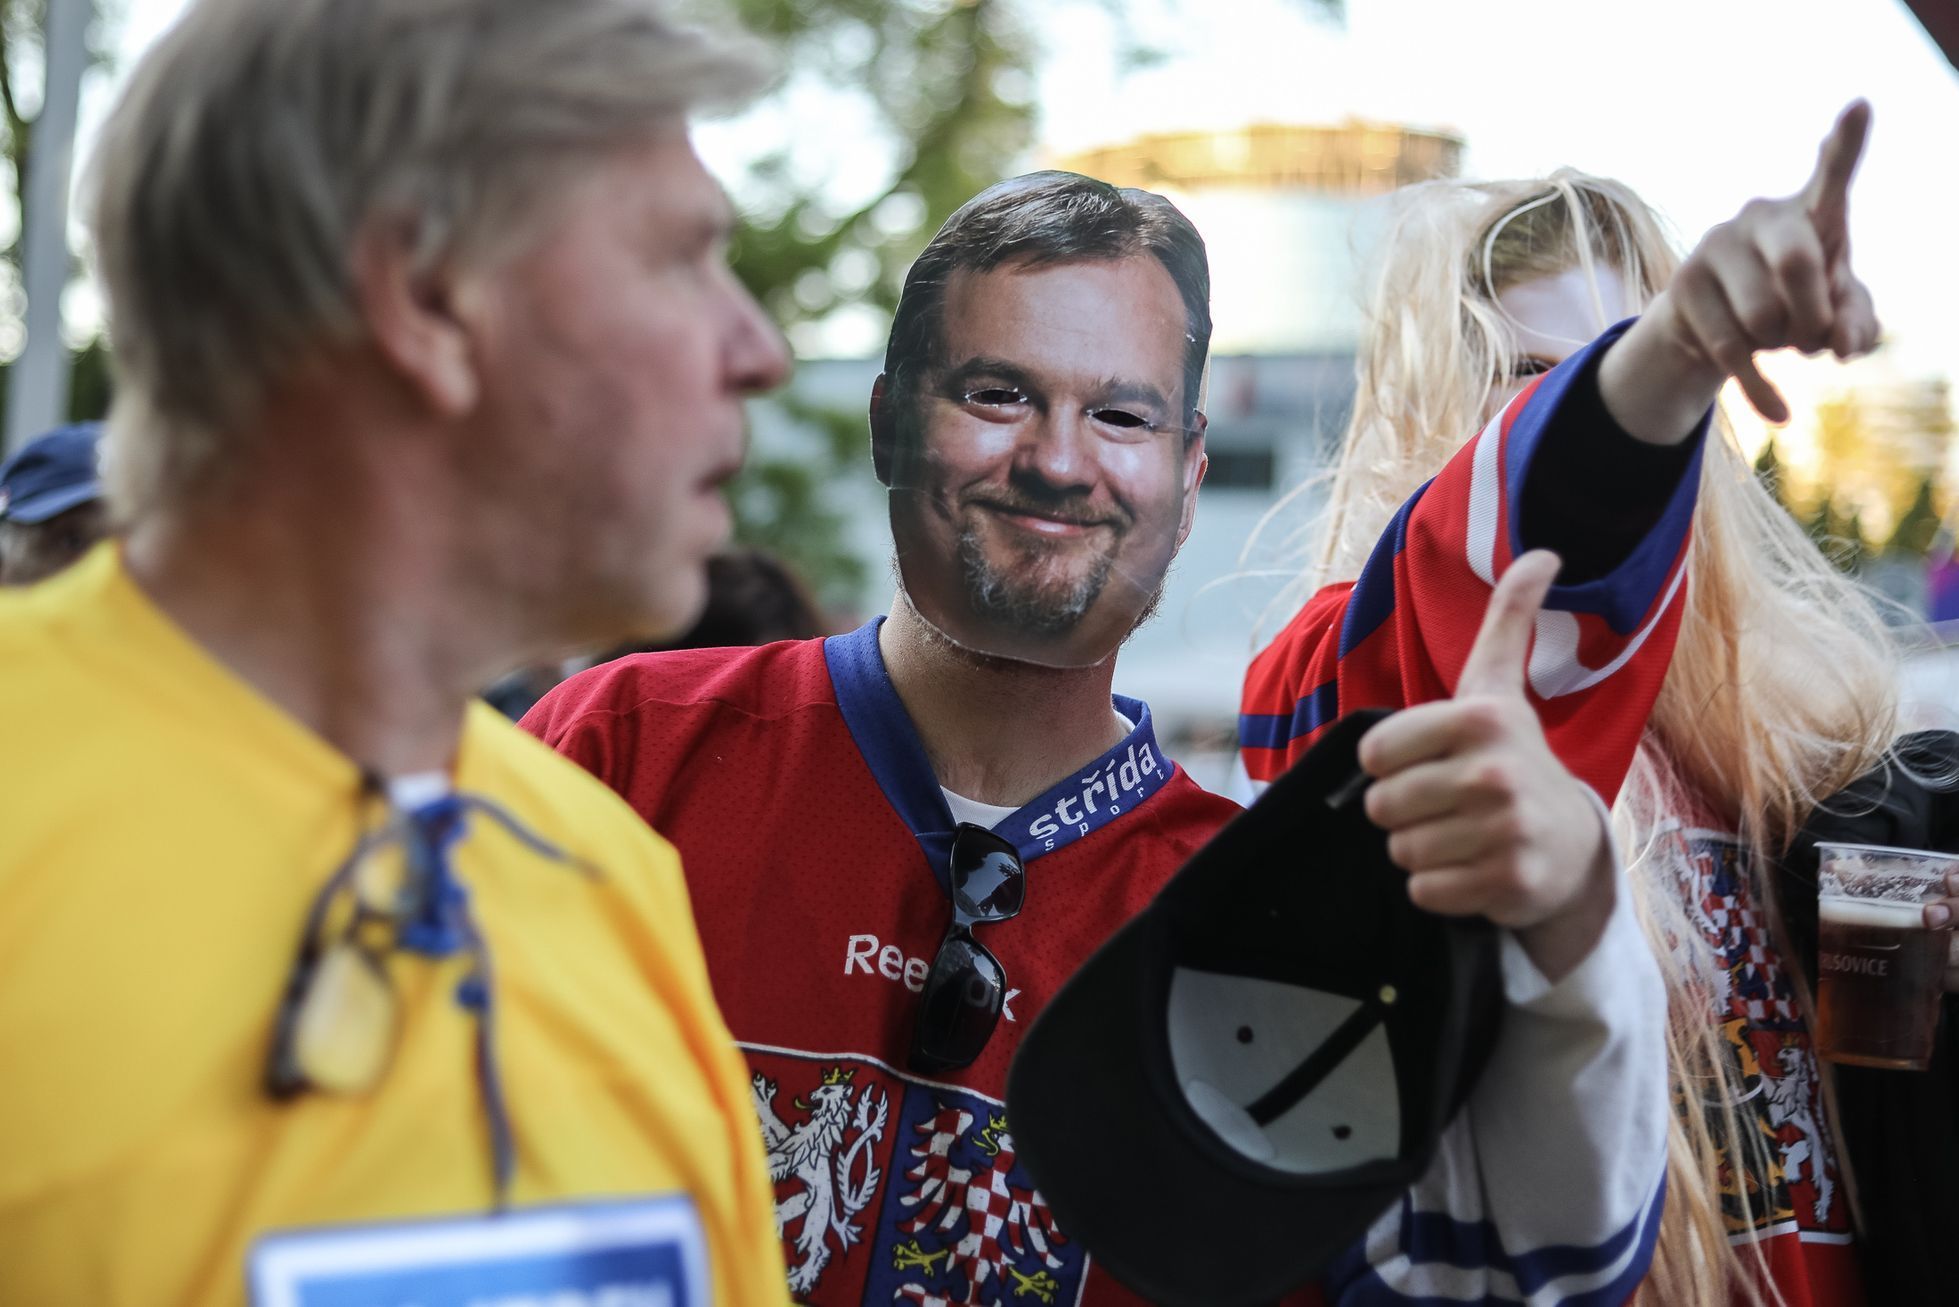 Autem na Mistrovství světa v hokeji v Bratislavě, rady, atmosféra a fanoušci